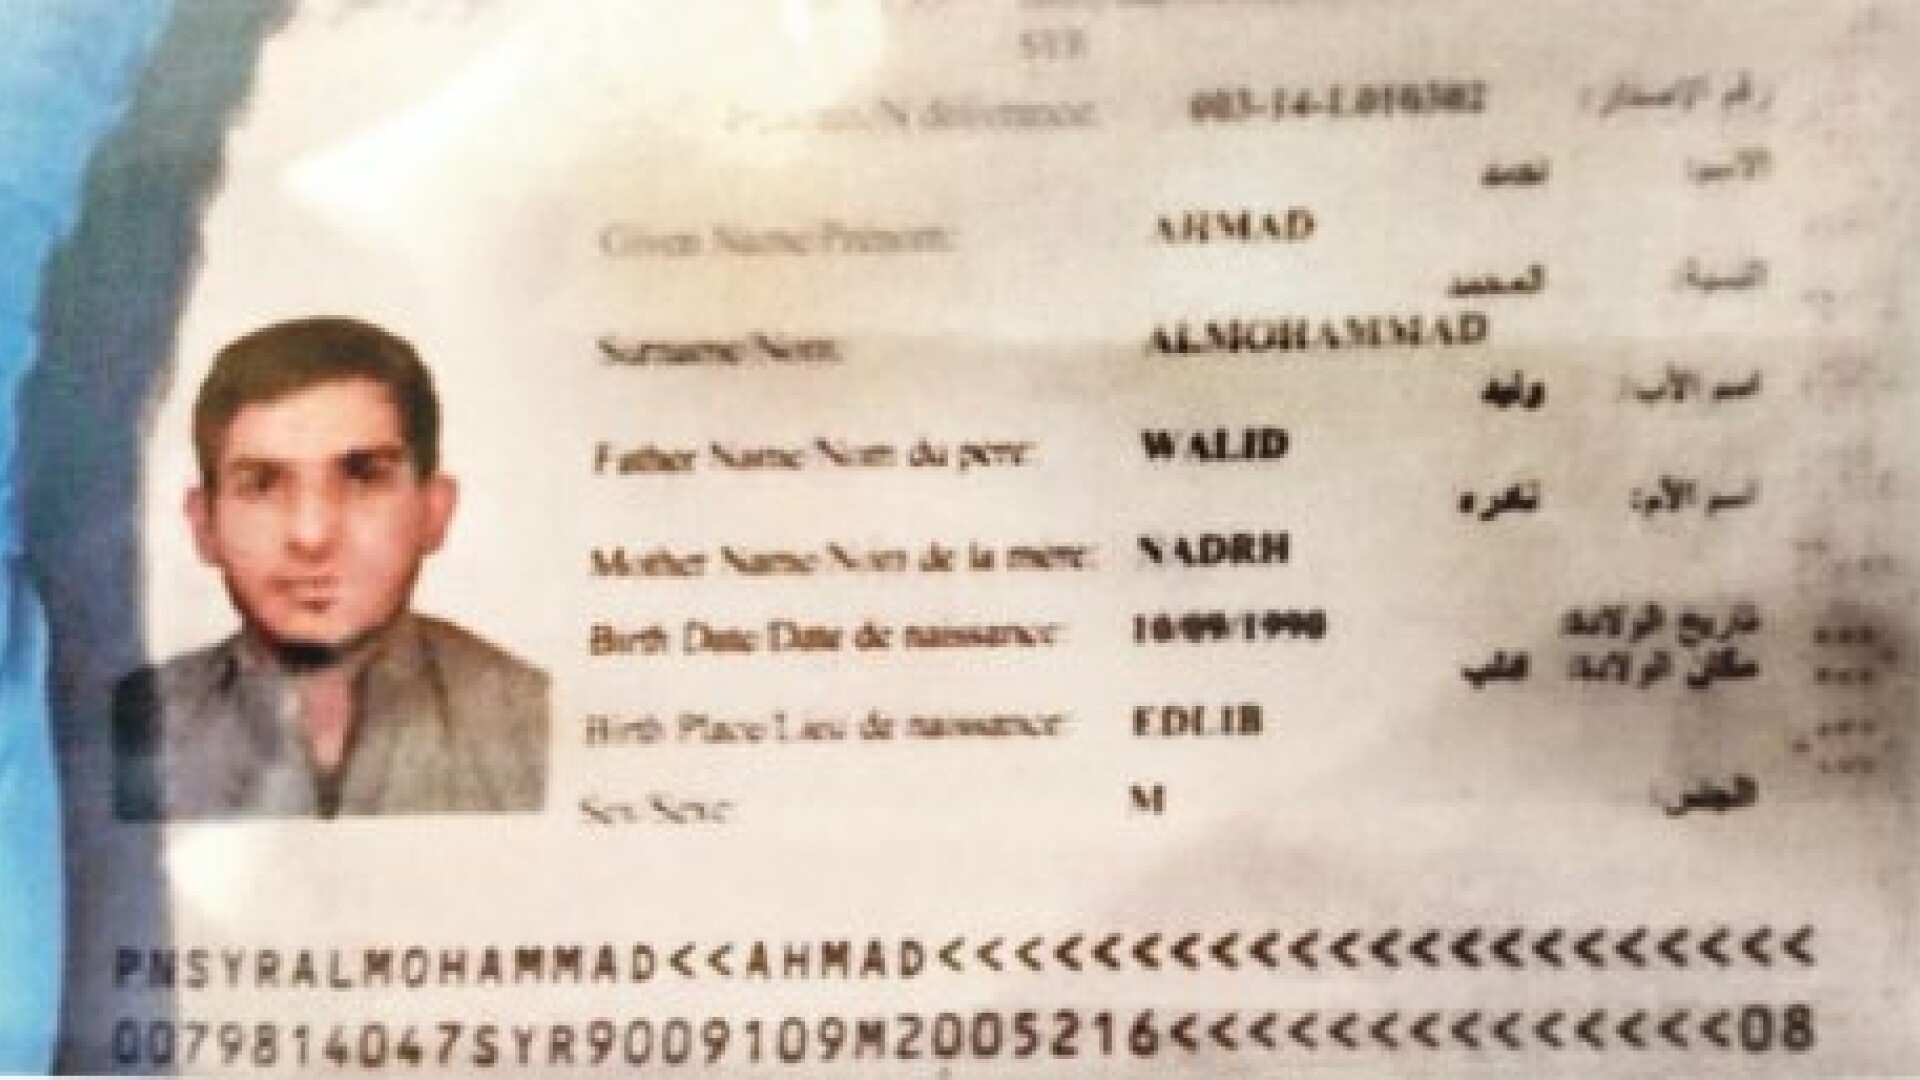 pasaport terorist ahmad